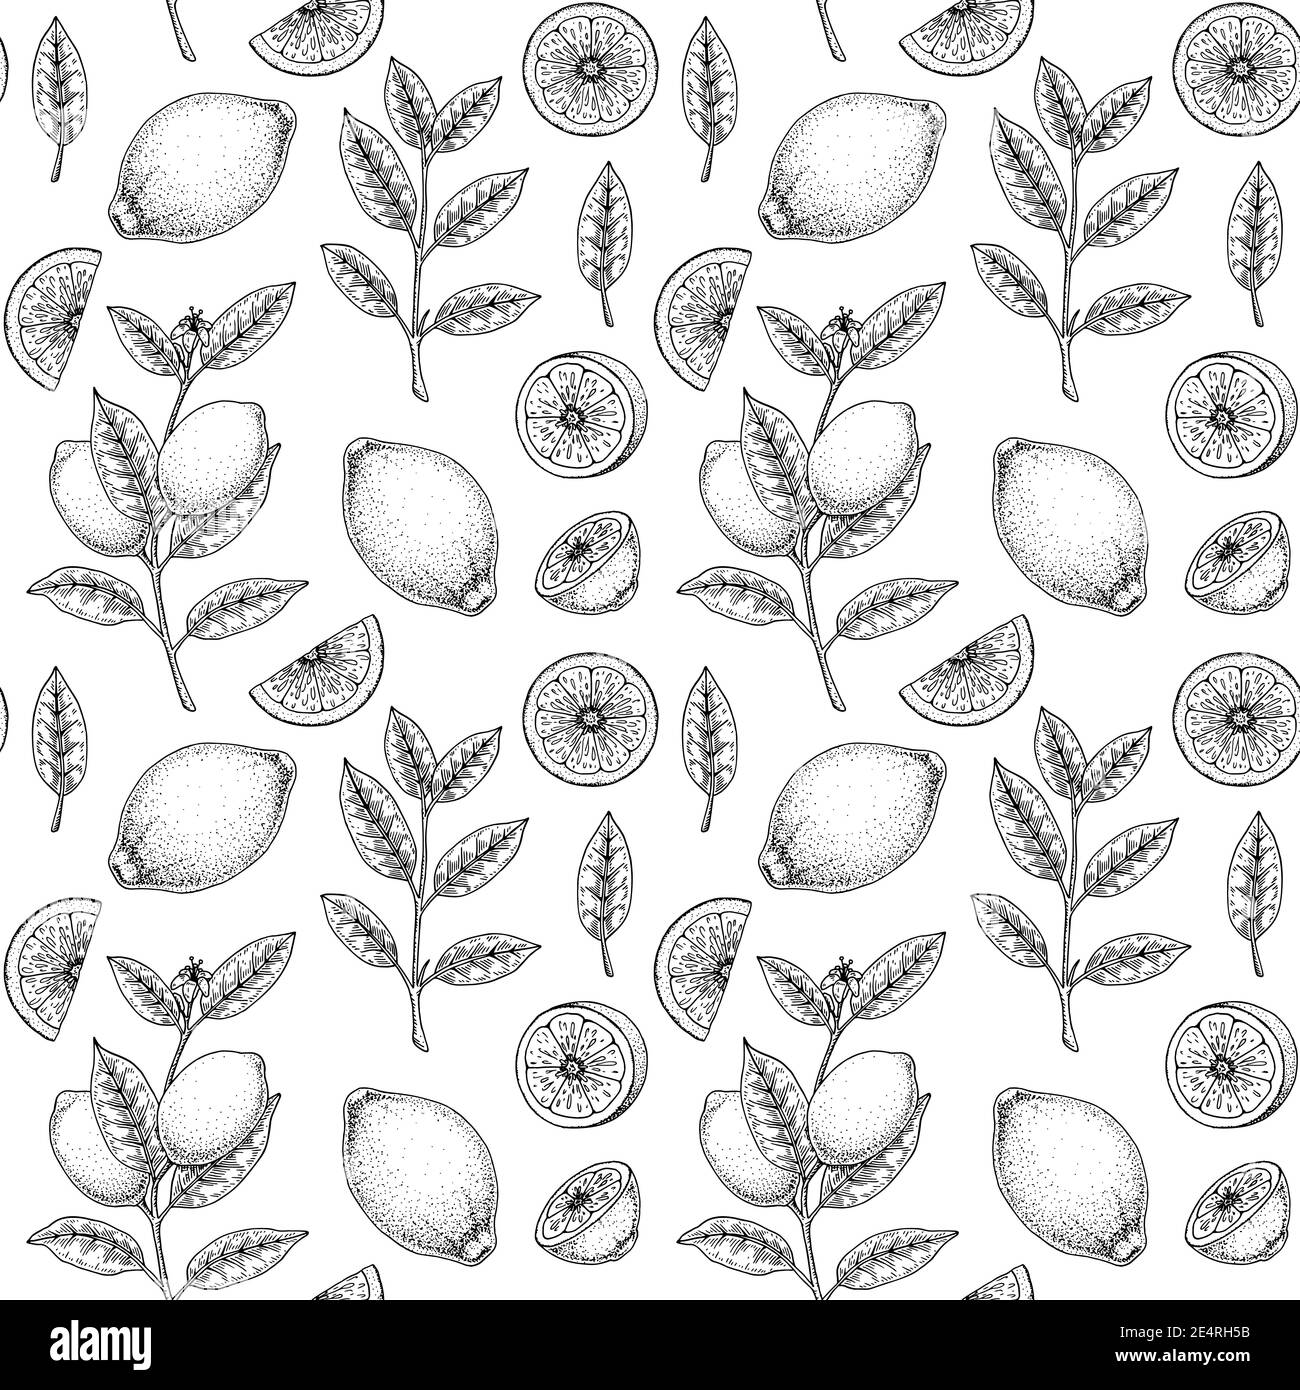 Handgezeichnetes nahtloses Muster mit Zitronenfrüchten, Blättern und Zweigen mit Blumen. Vektorgrafik im Skizzenstil Stock Vektor